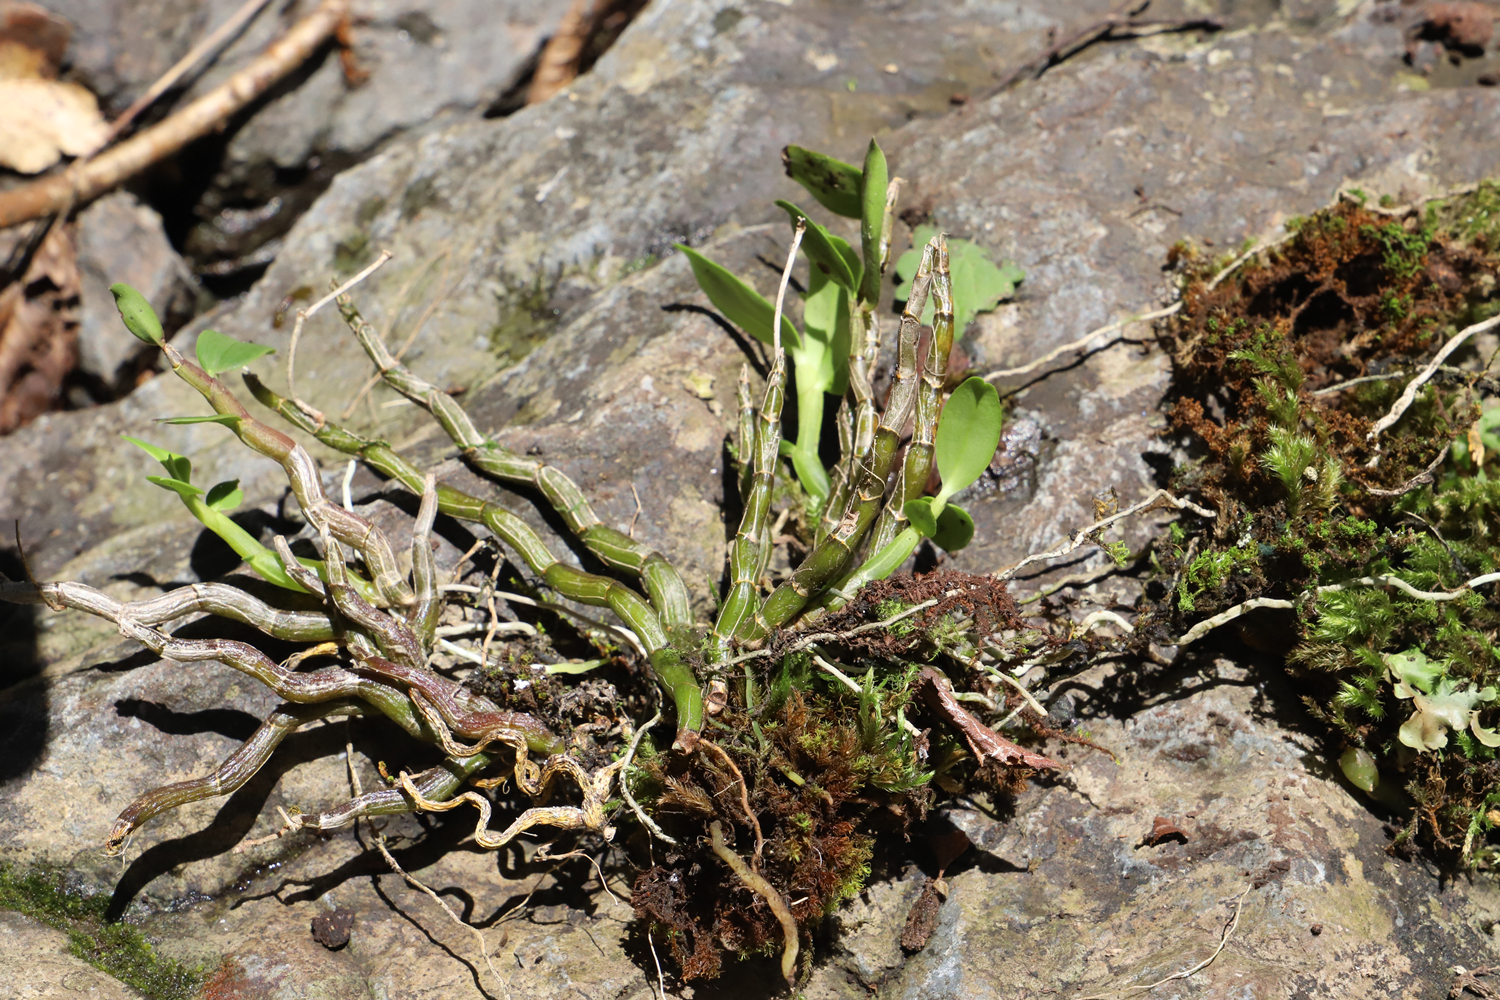 共建地球生命共同体丨重庆城口发现珍稀植物曲茎石斛种群